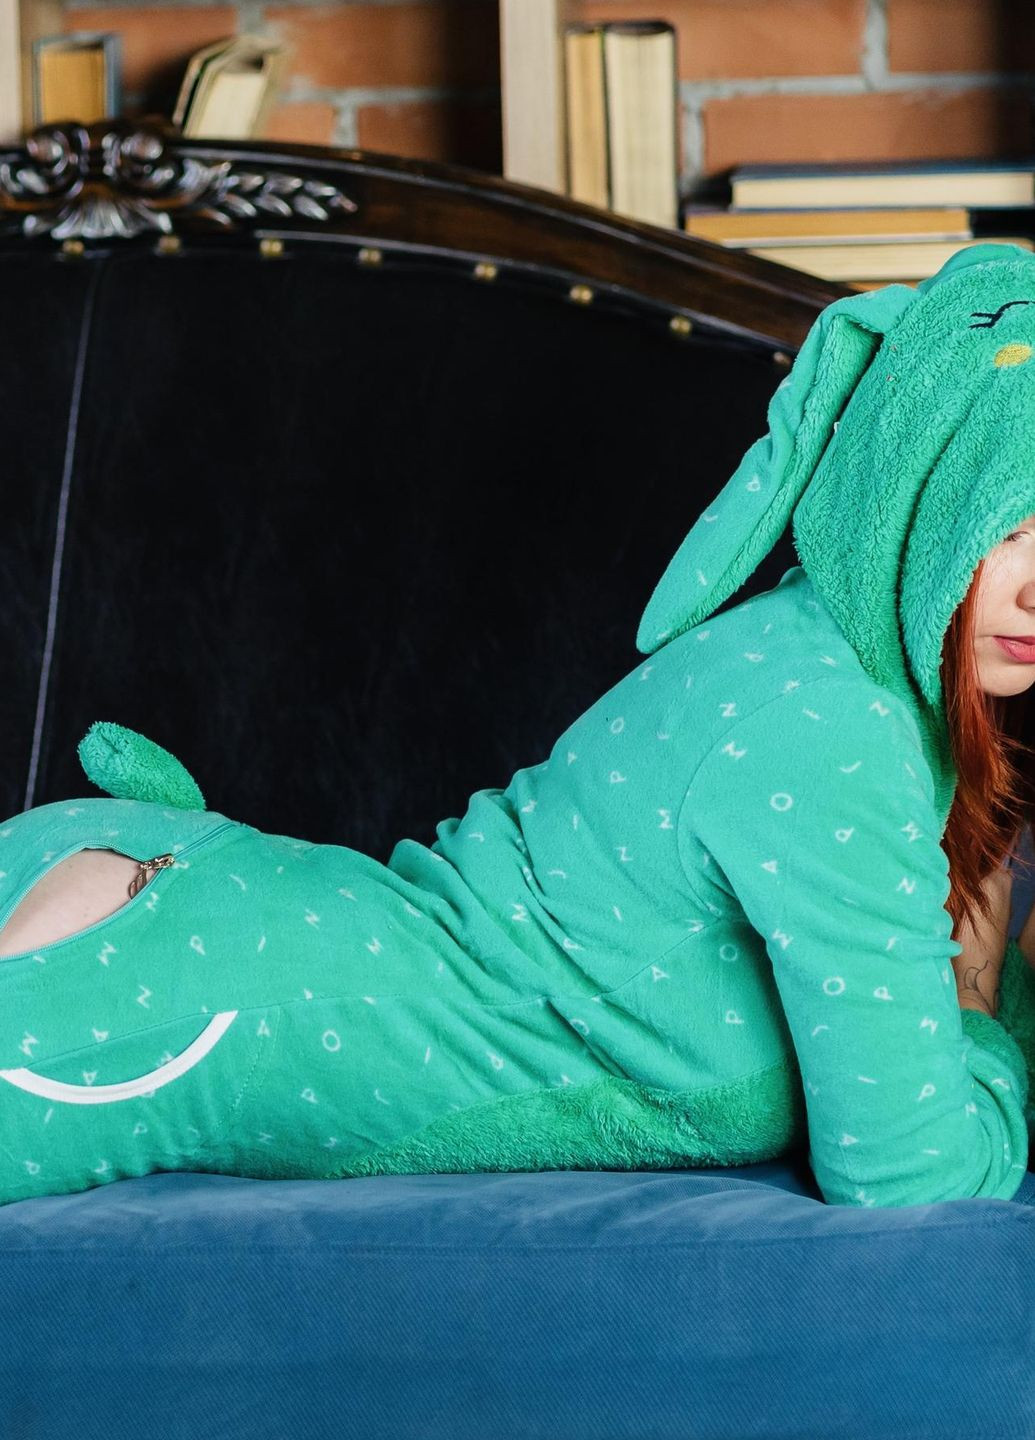 Светло-зеленая зимняя пижама комбинезон Pijamoni Попожама зайчик (комбінезон з карманом на попі, піджамоні) - кигурумі